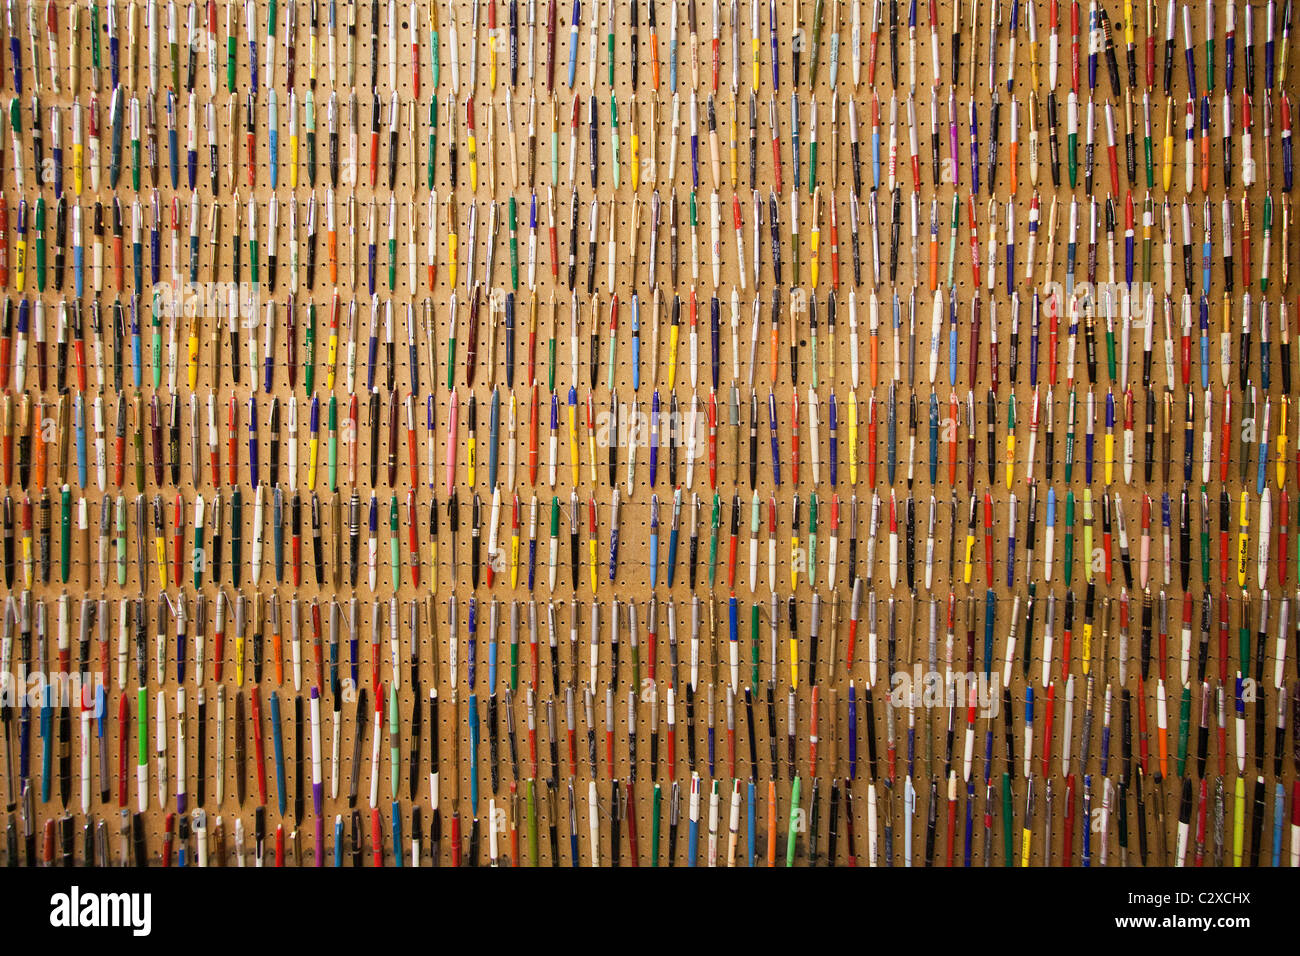 Un mur plein de beaucoup de stylos bille. Banque D'Images